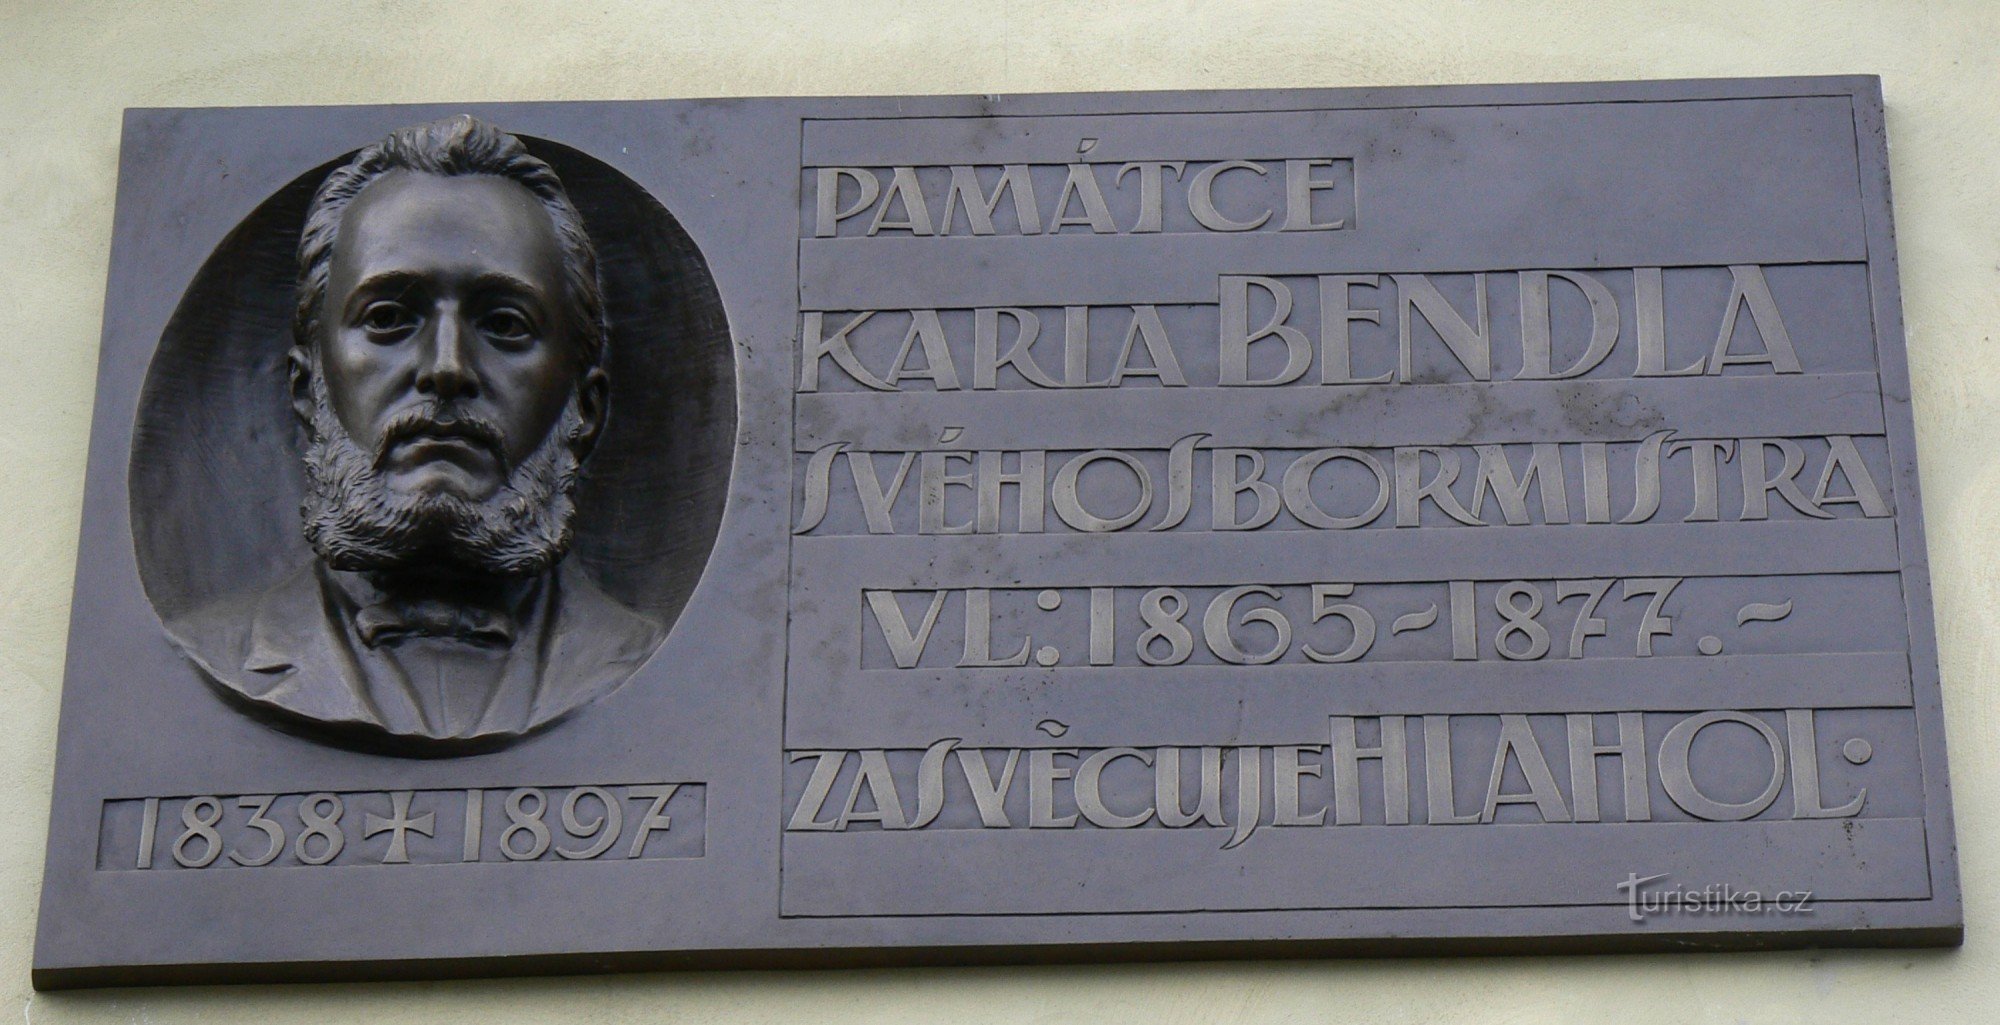 Placa memorial Karel Bendl